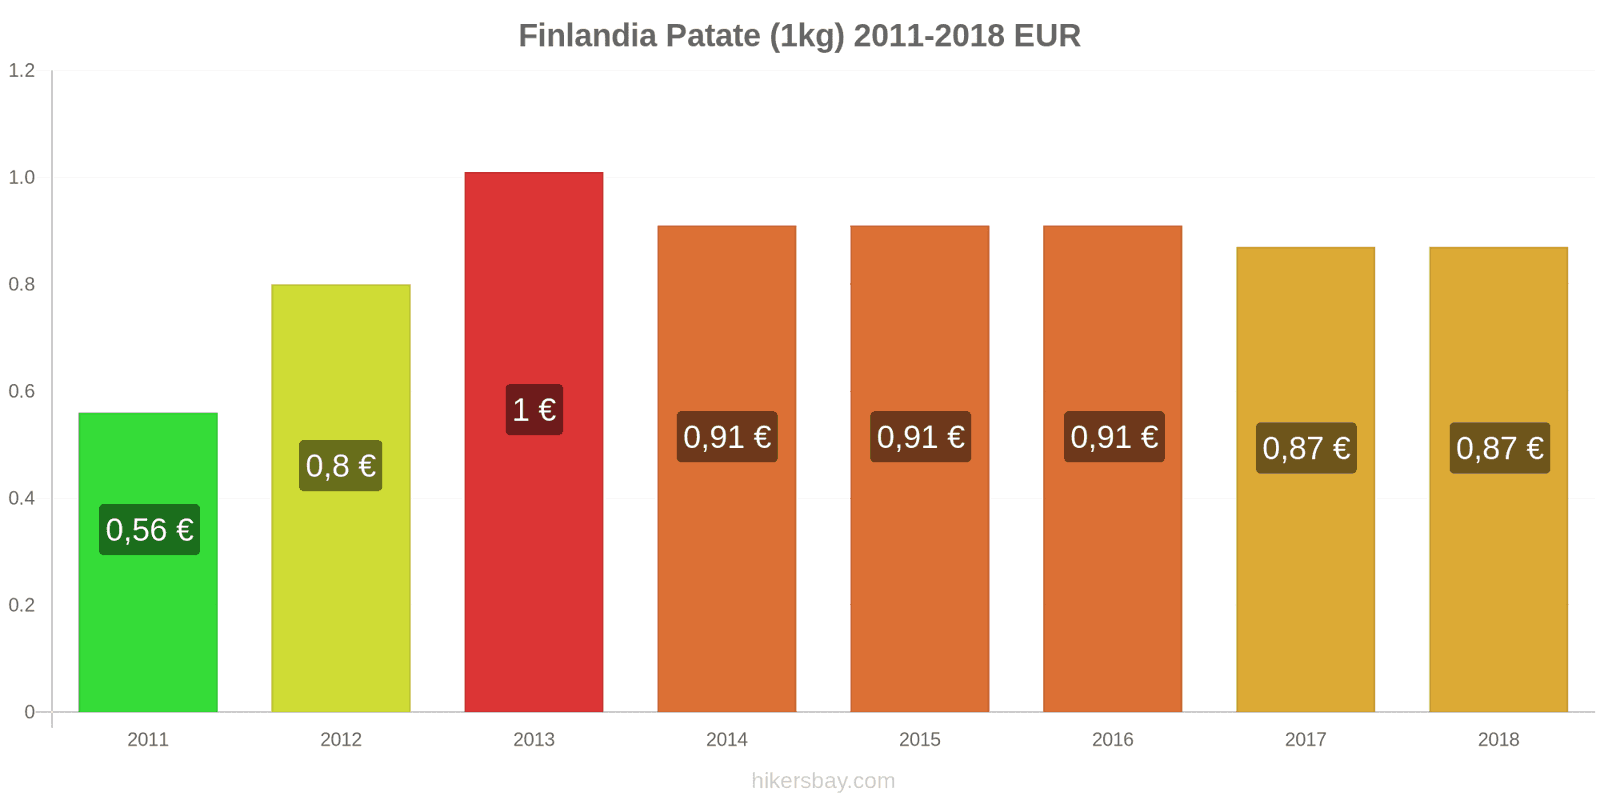 Finlandia cambi di prezzo Patate (1kg) hikersbay.com